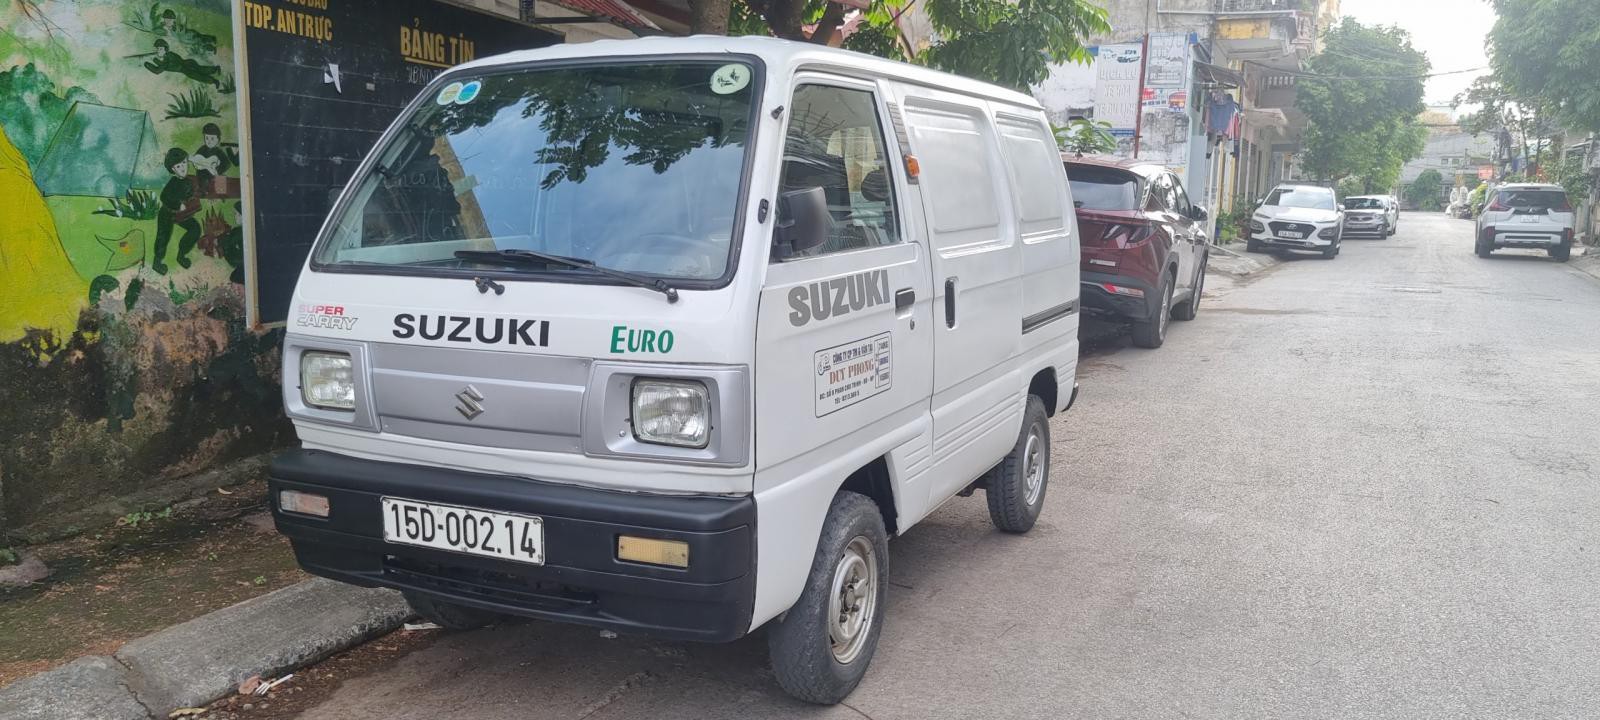 Bán tải Suzuki van cũ đời 2013 tại Hải Phòng lh 090.605.3322